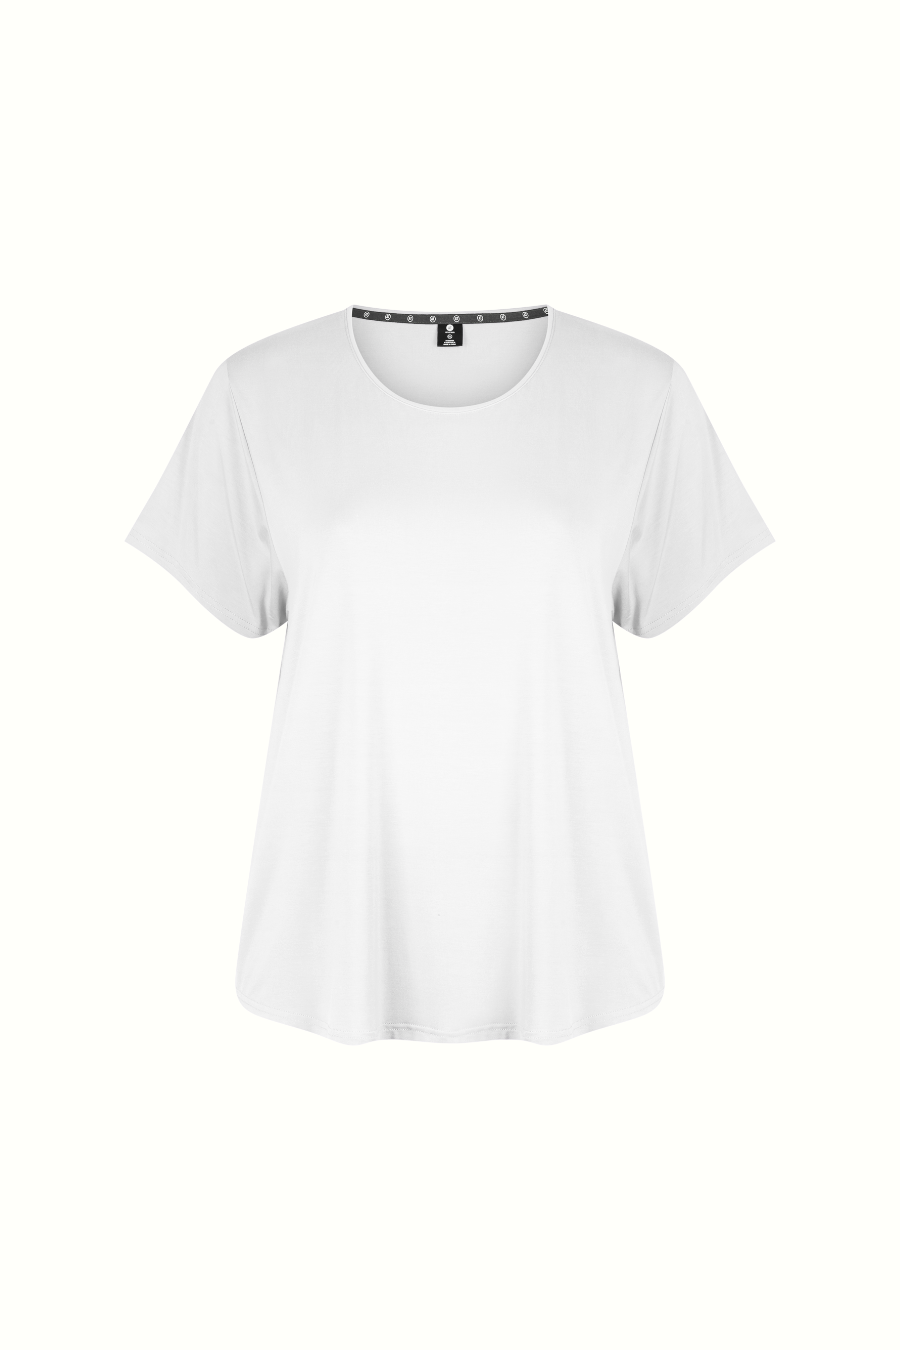 Classic Bamboo T-Shirt - White